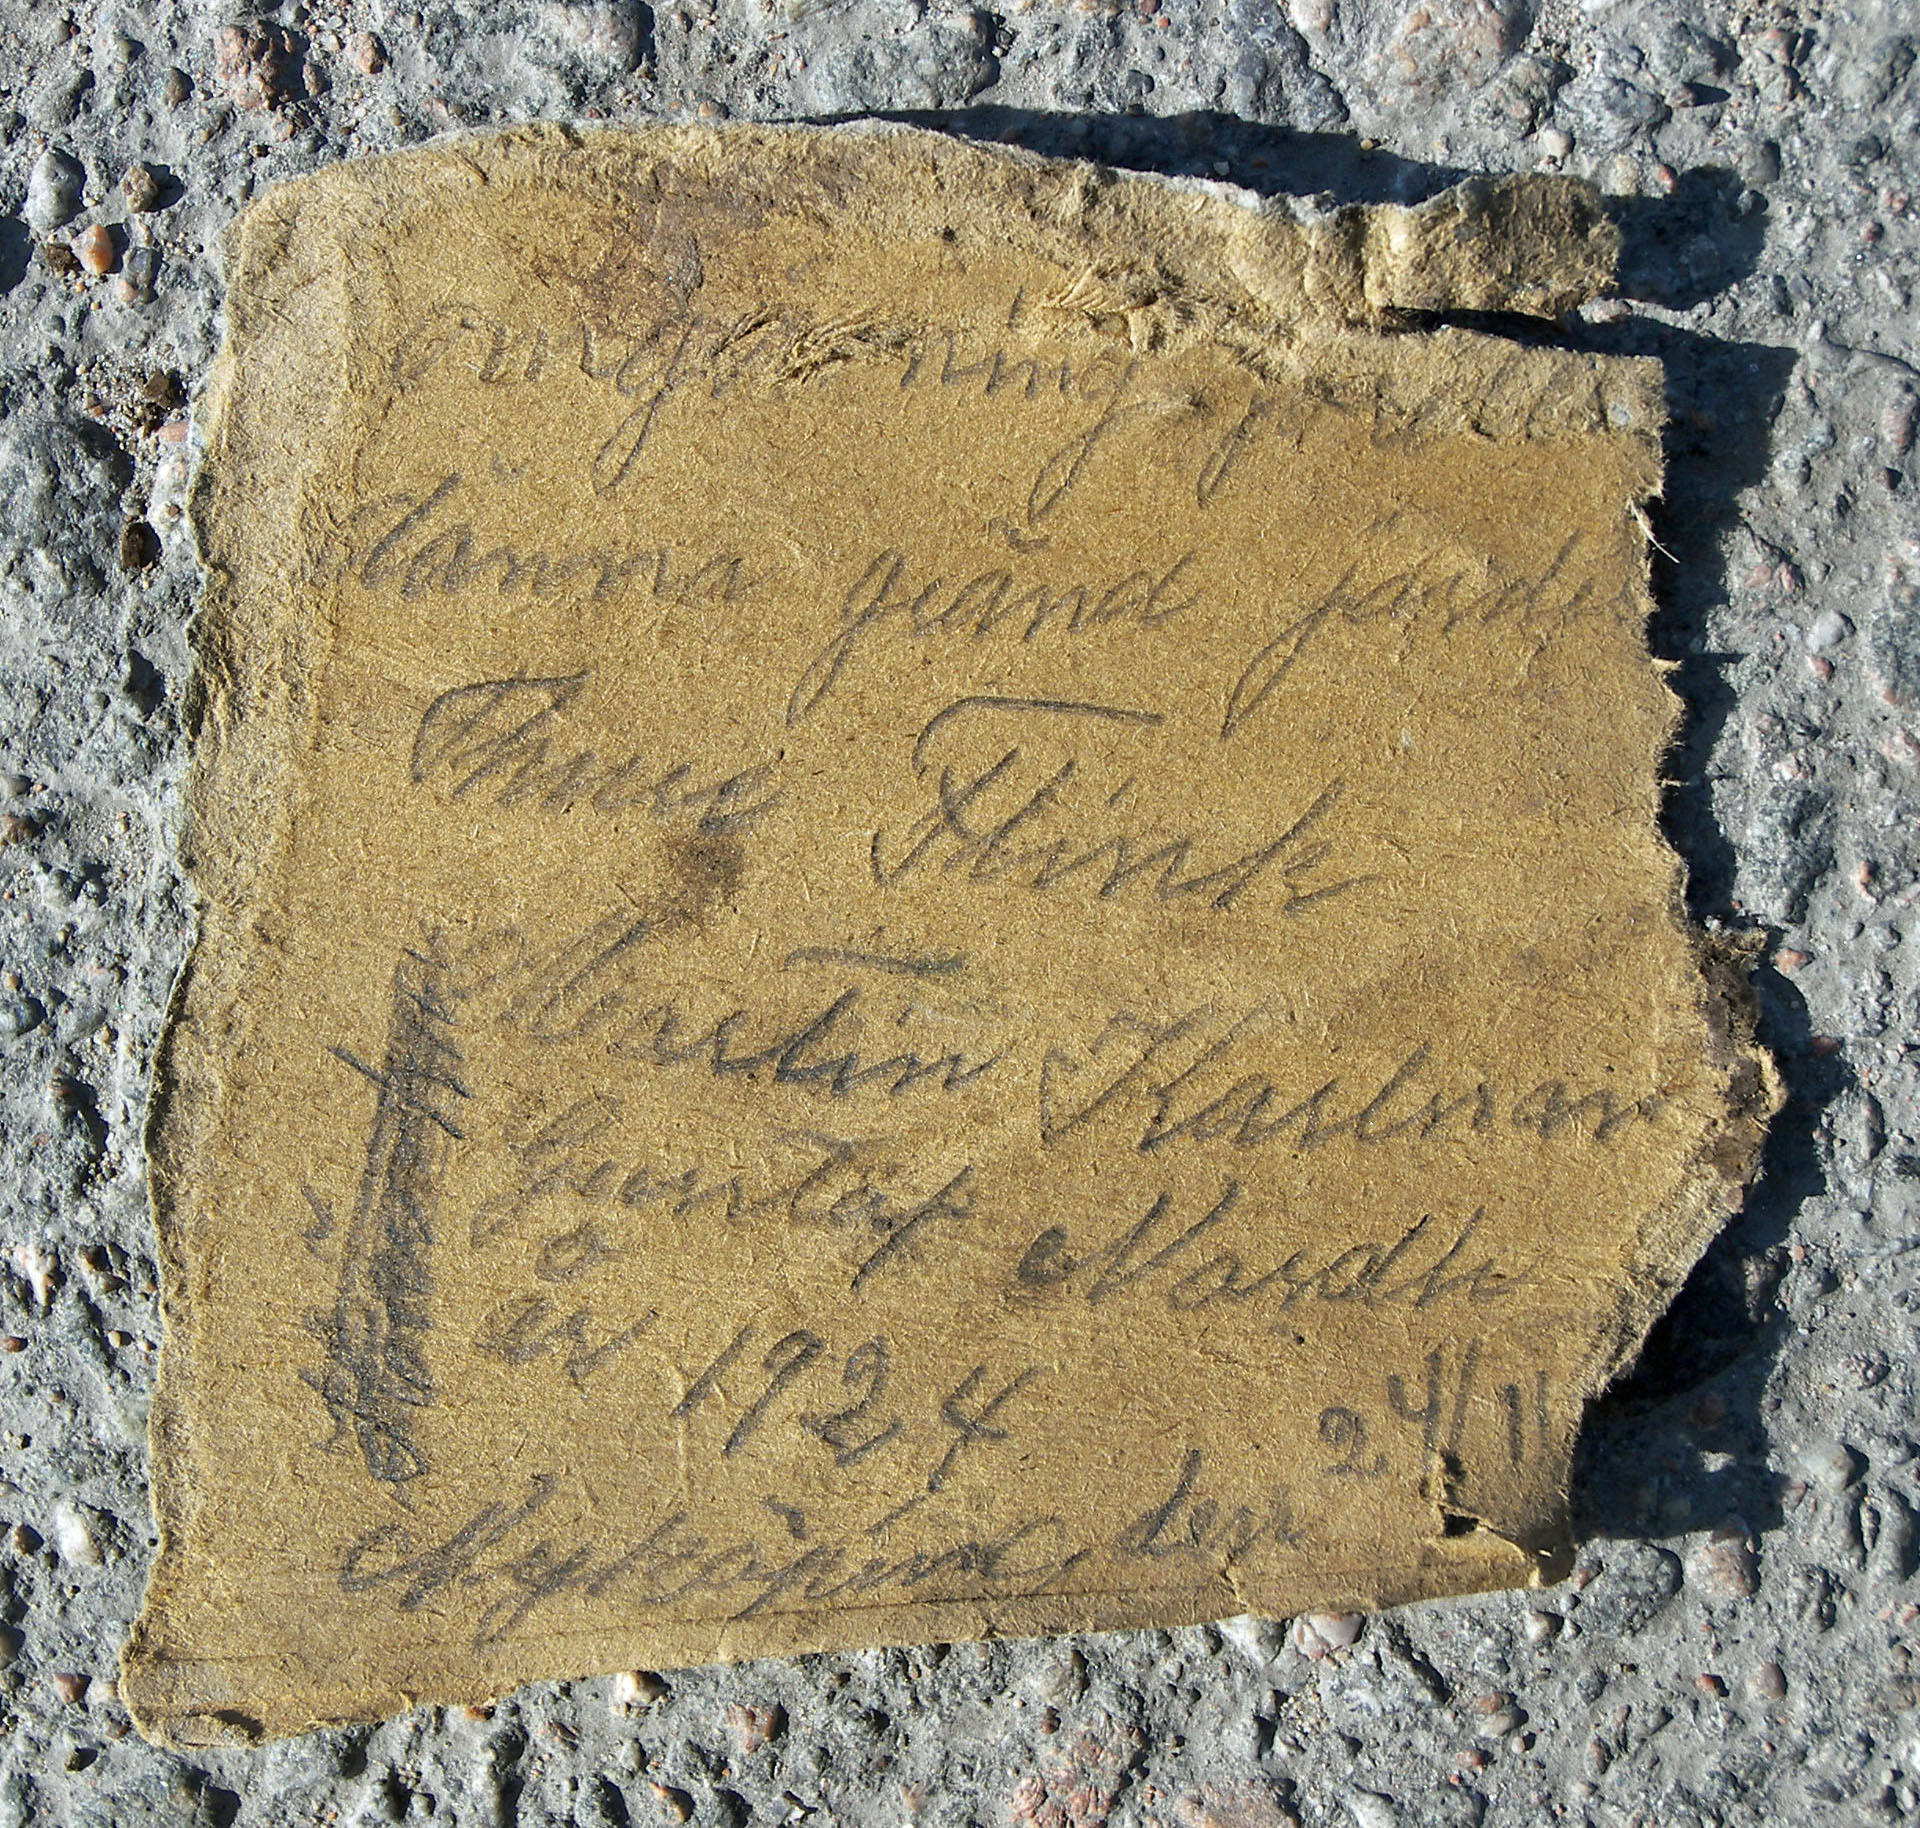 SLM 18106 48-50 - Flaskpost med meddelande från arbetare i Nyköping år 1924-25